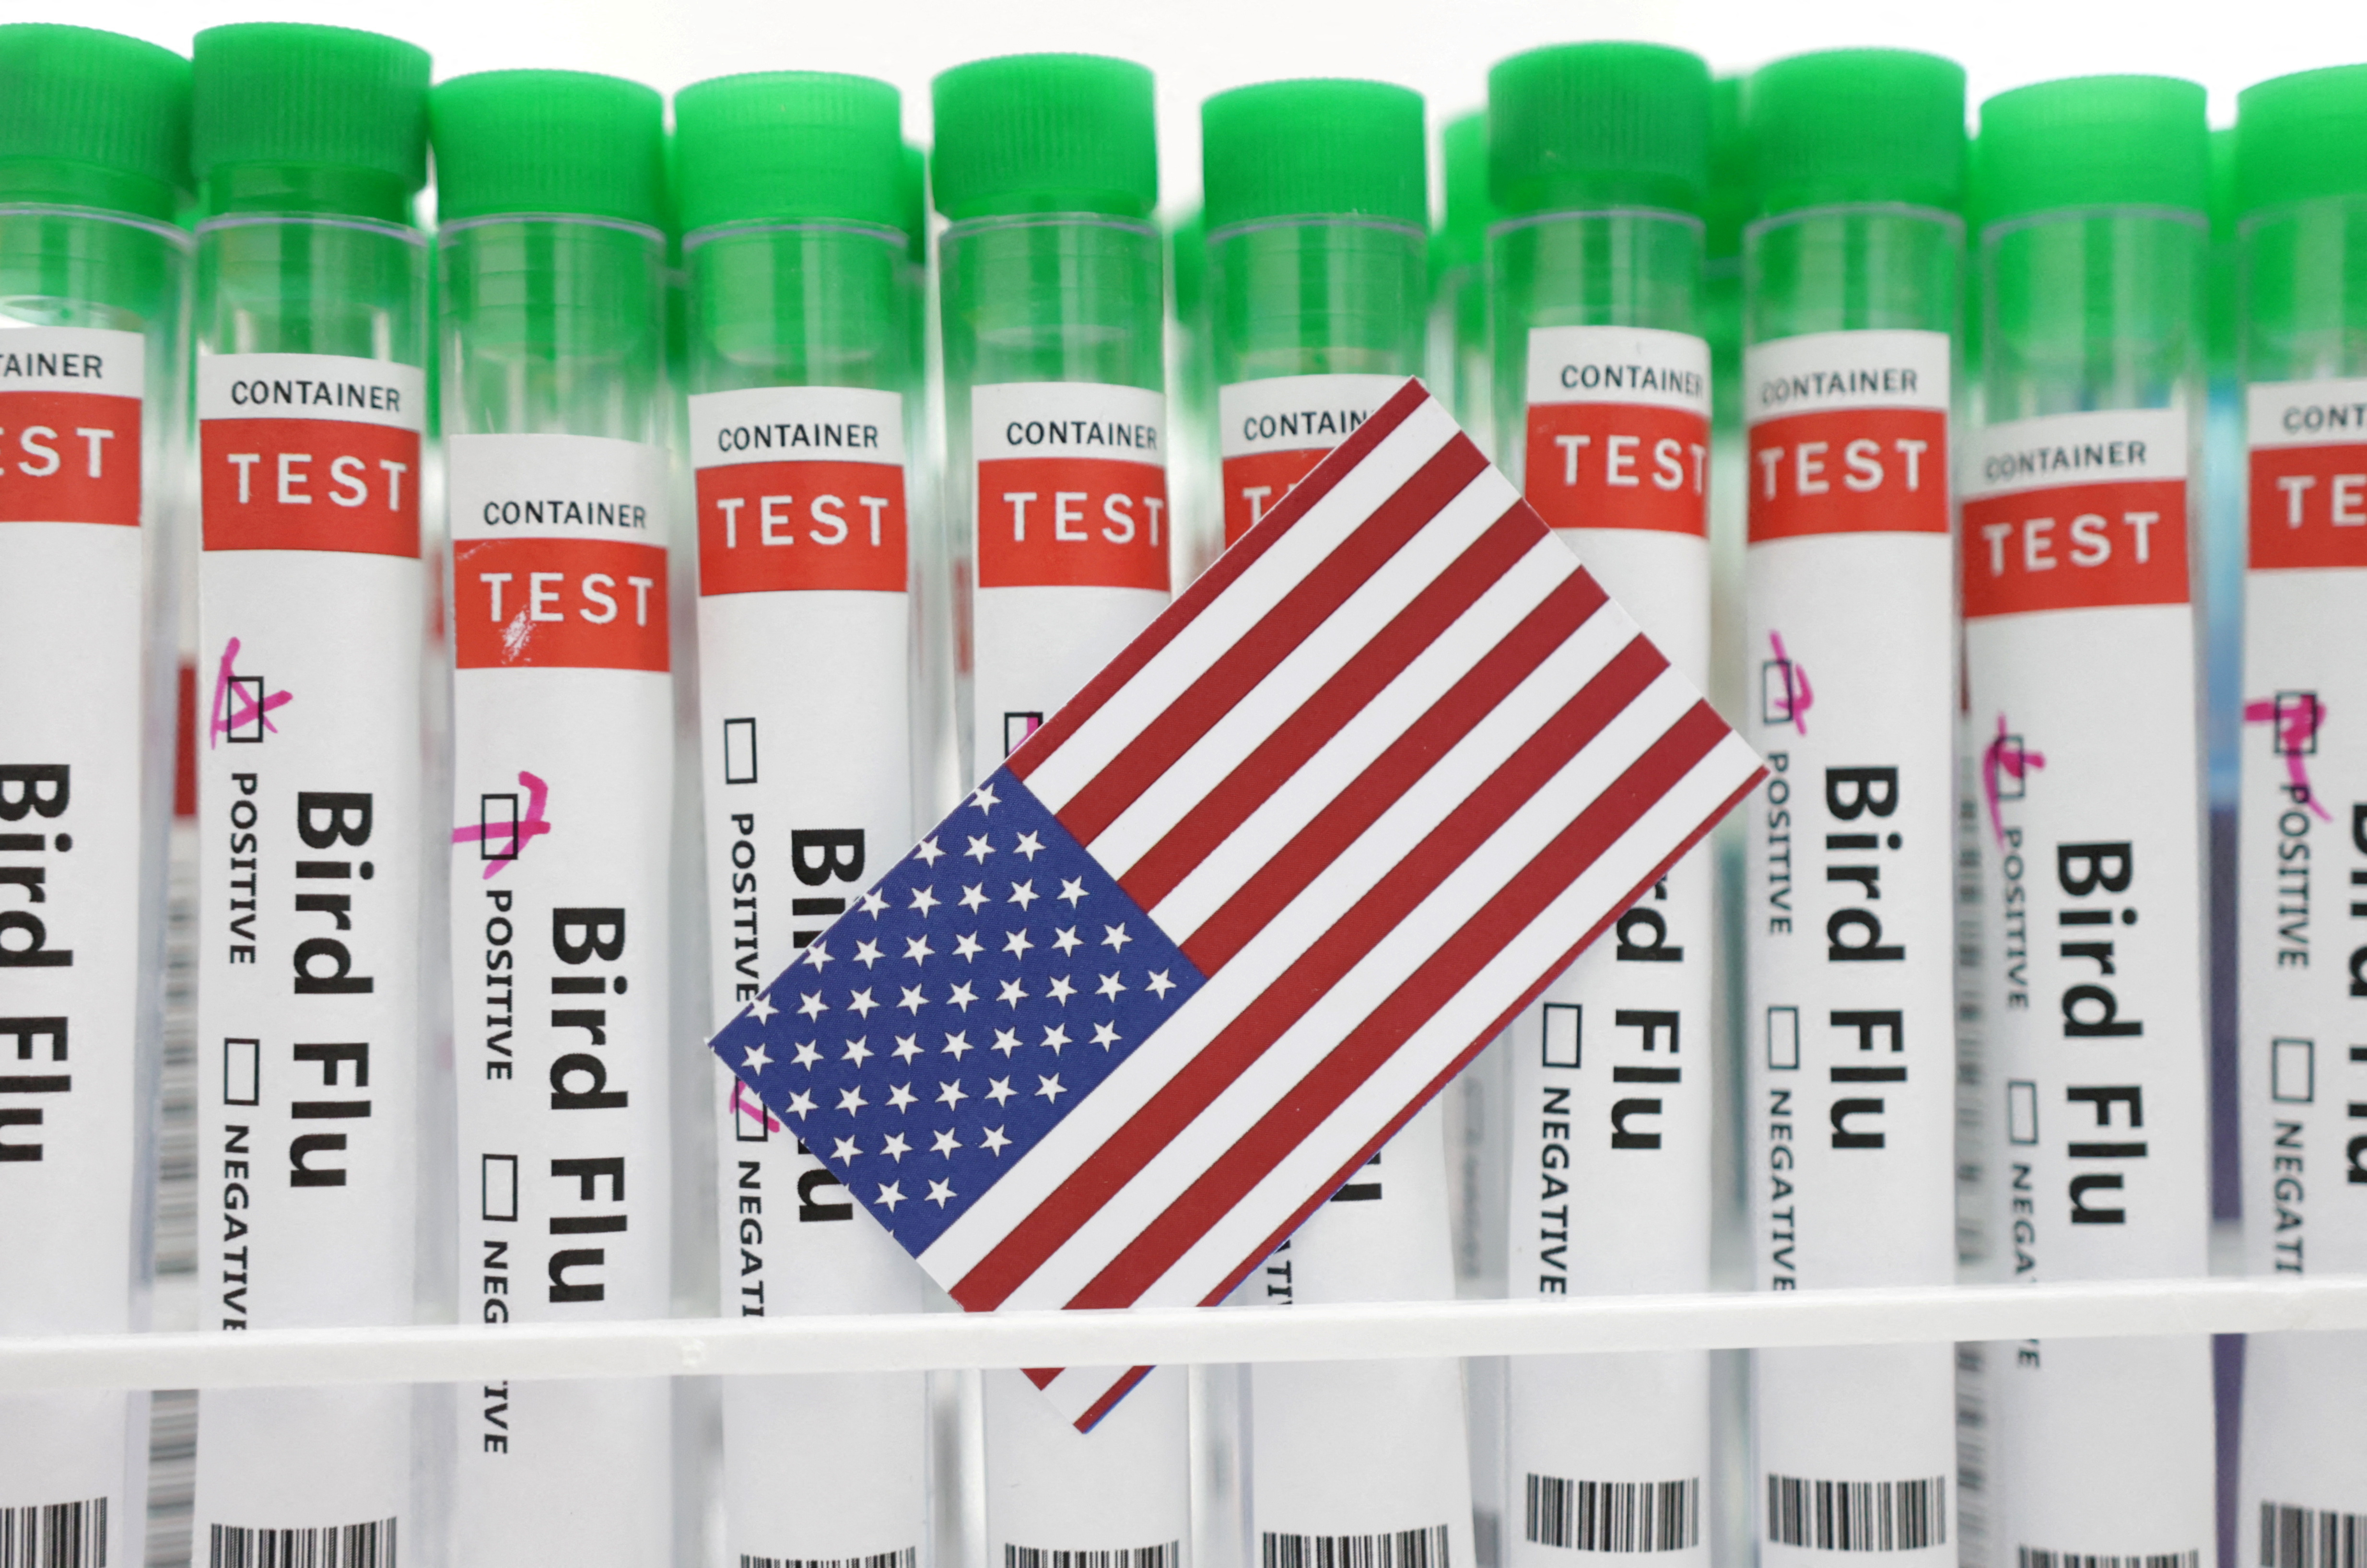 Illustration shows test tubes labelled 